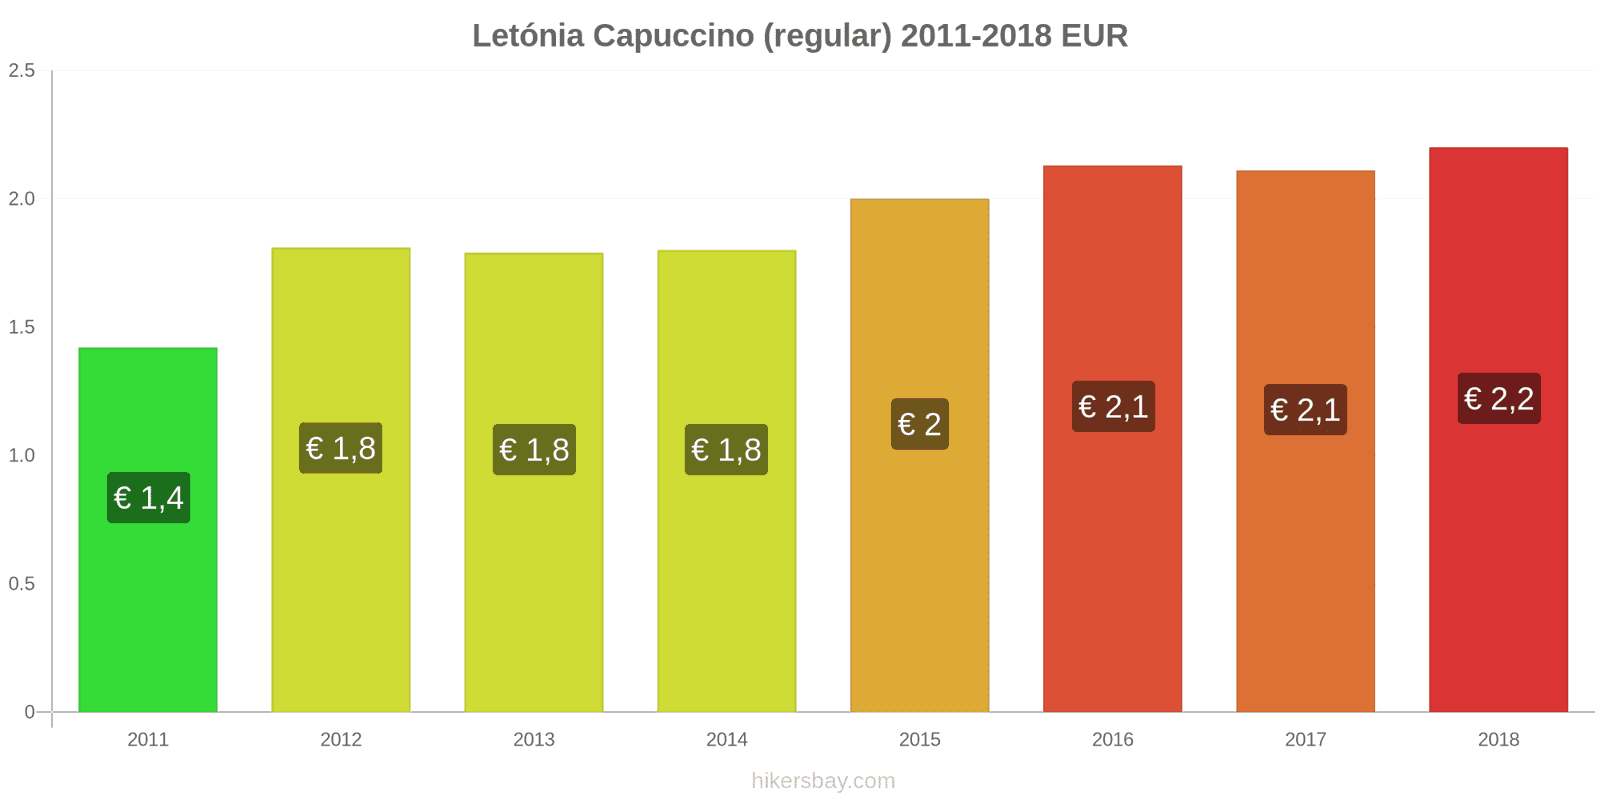 Letónia mudanças de preços Cappuccino hikersbay.com